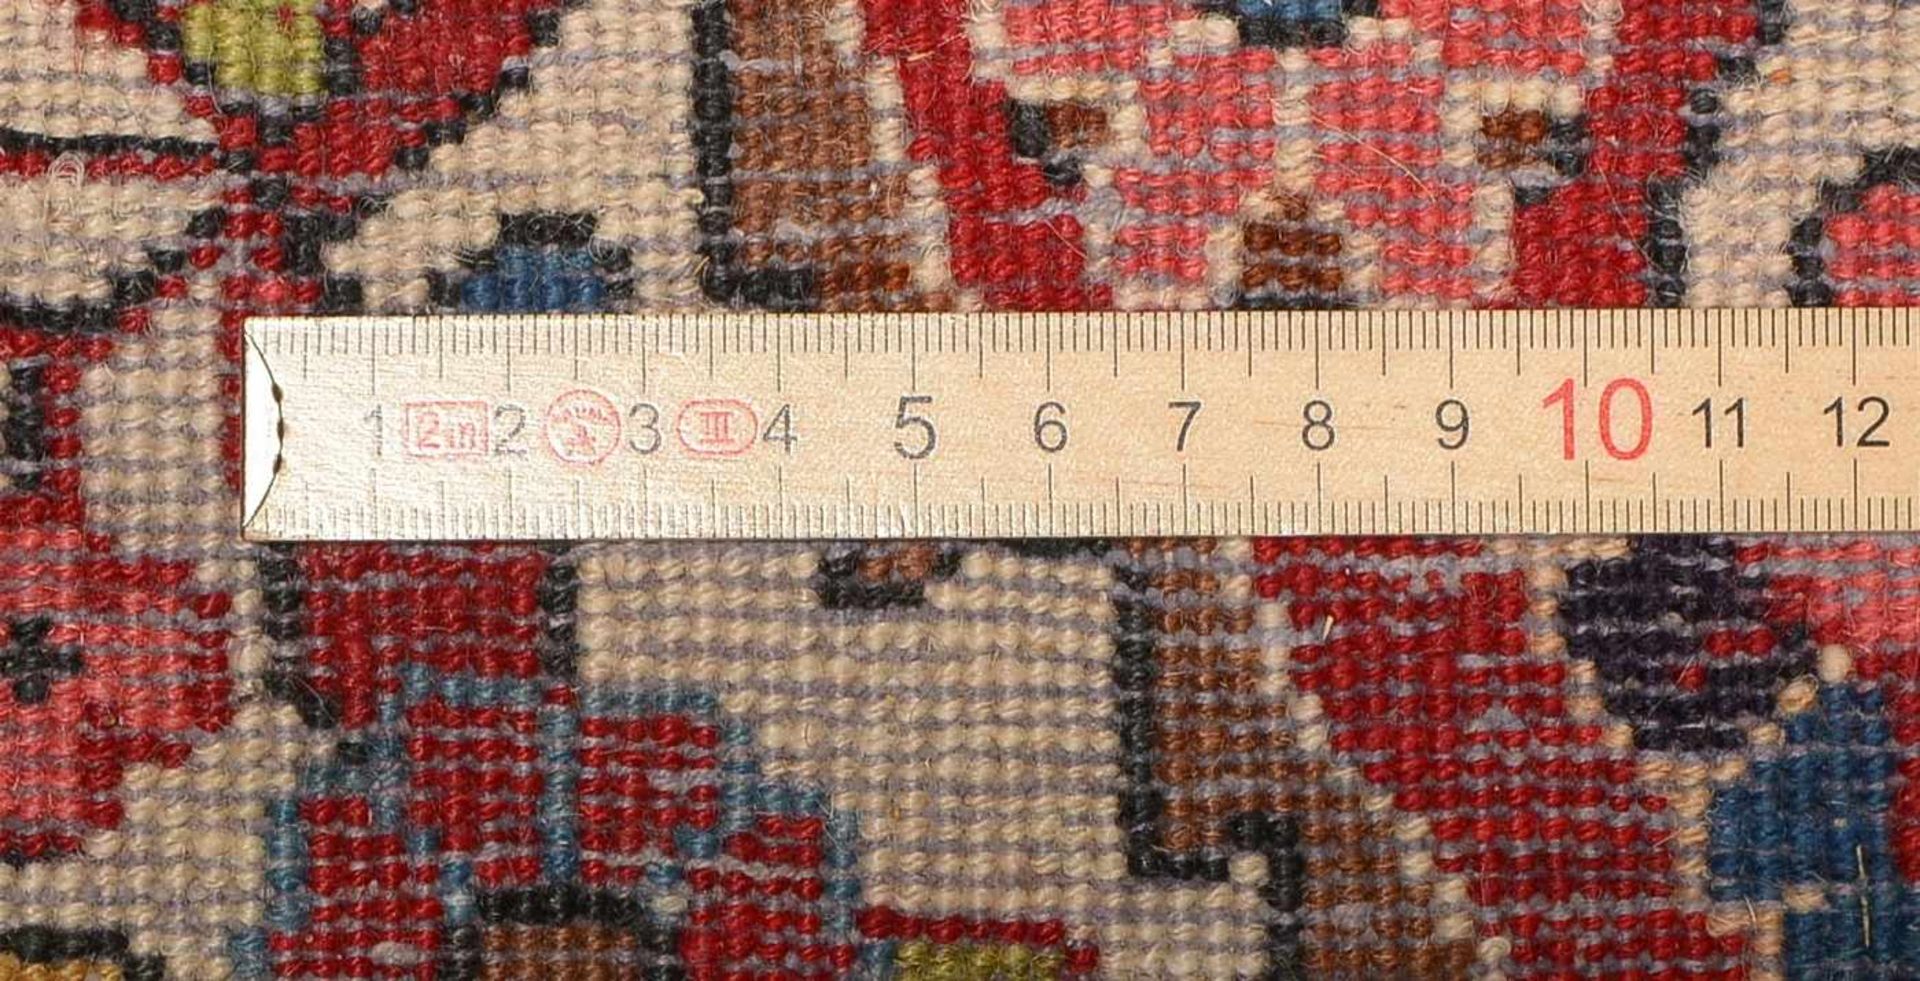 Djosan-Orientteppich, feste Knüpfung, ringsum komplett, Flor in gutem Zustand; Maße 203 x 130 cm - Bild 2 aus 2